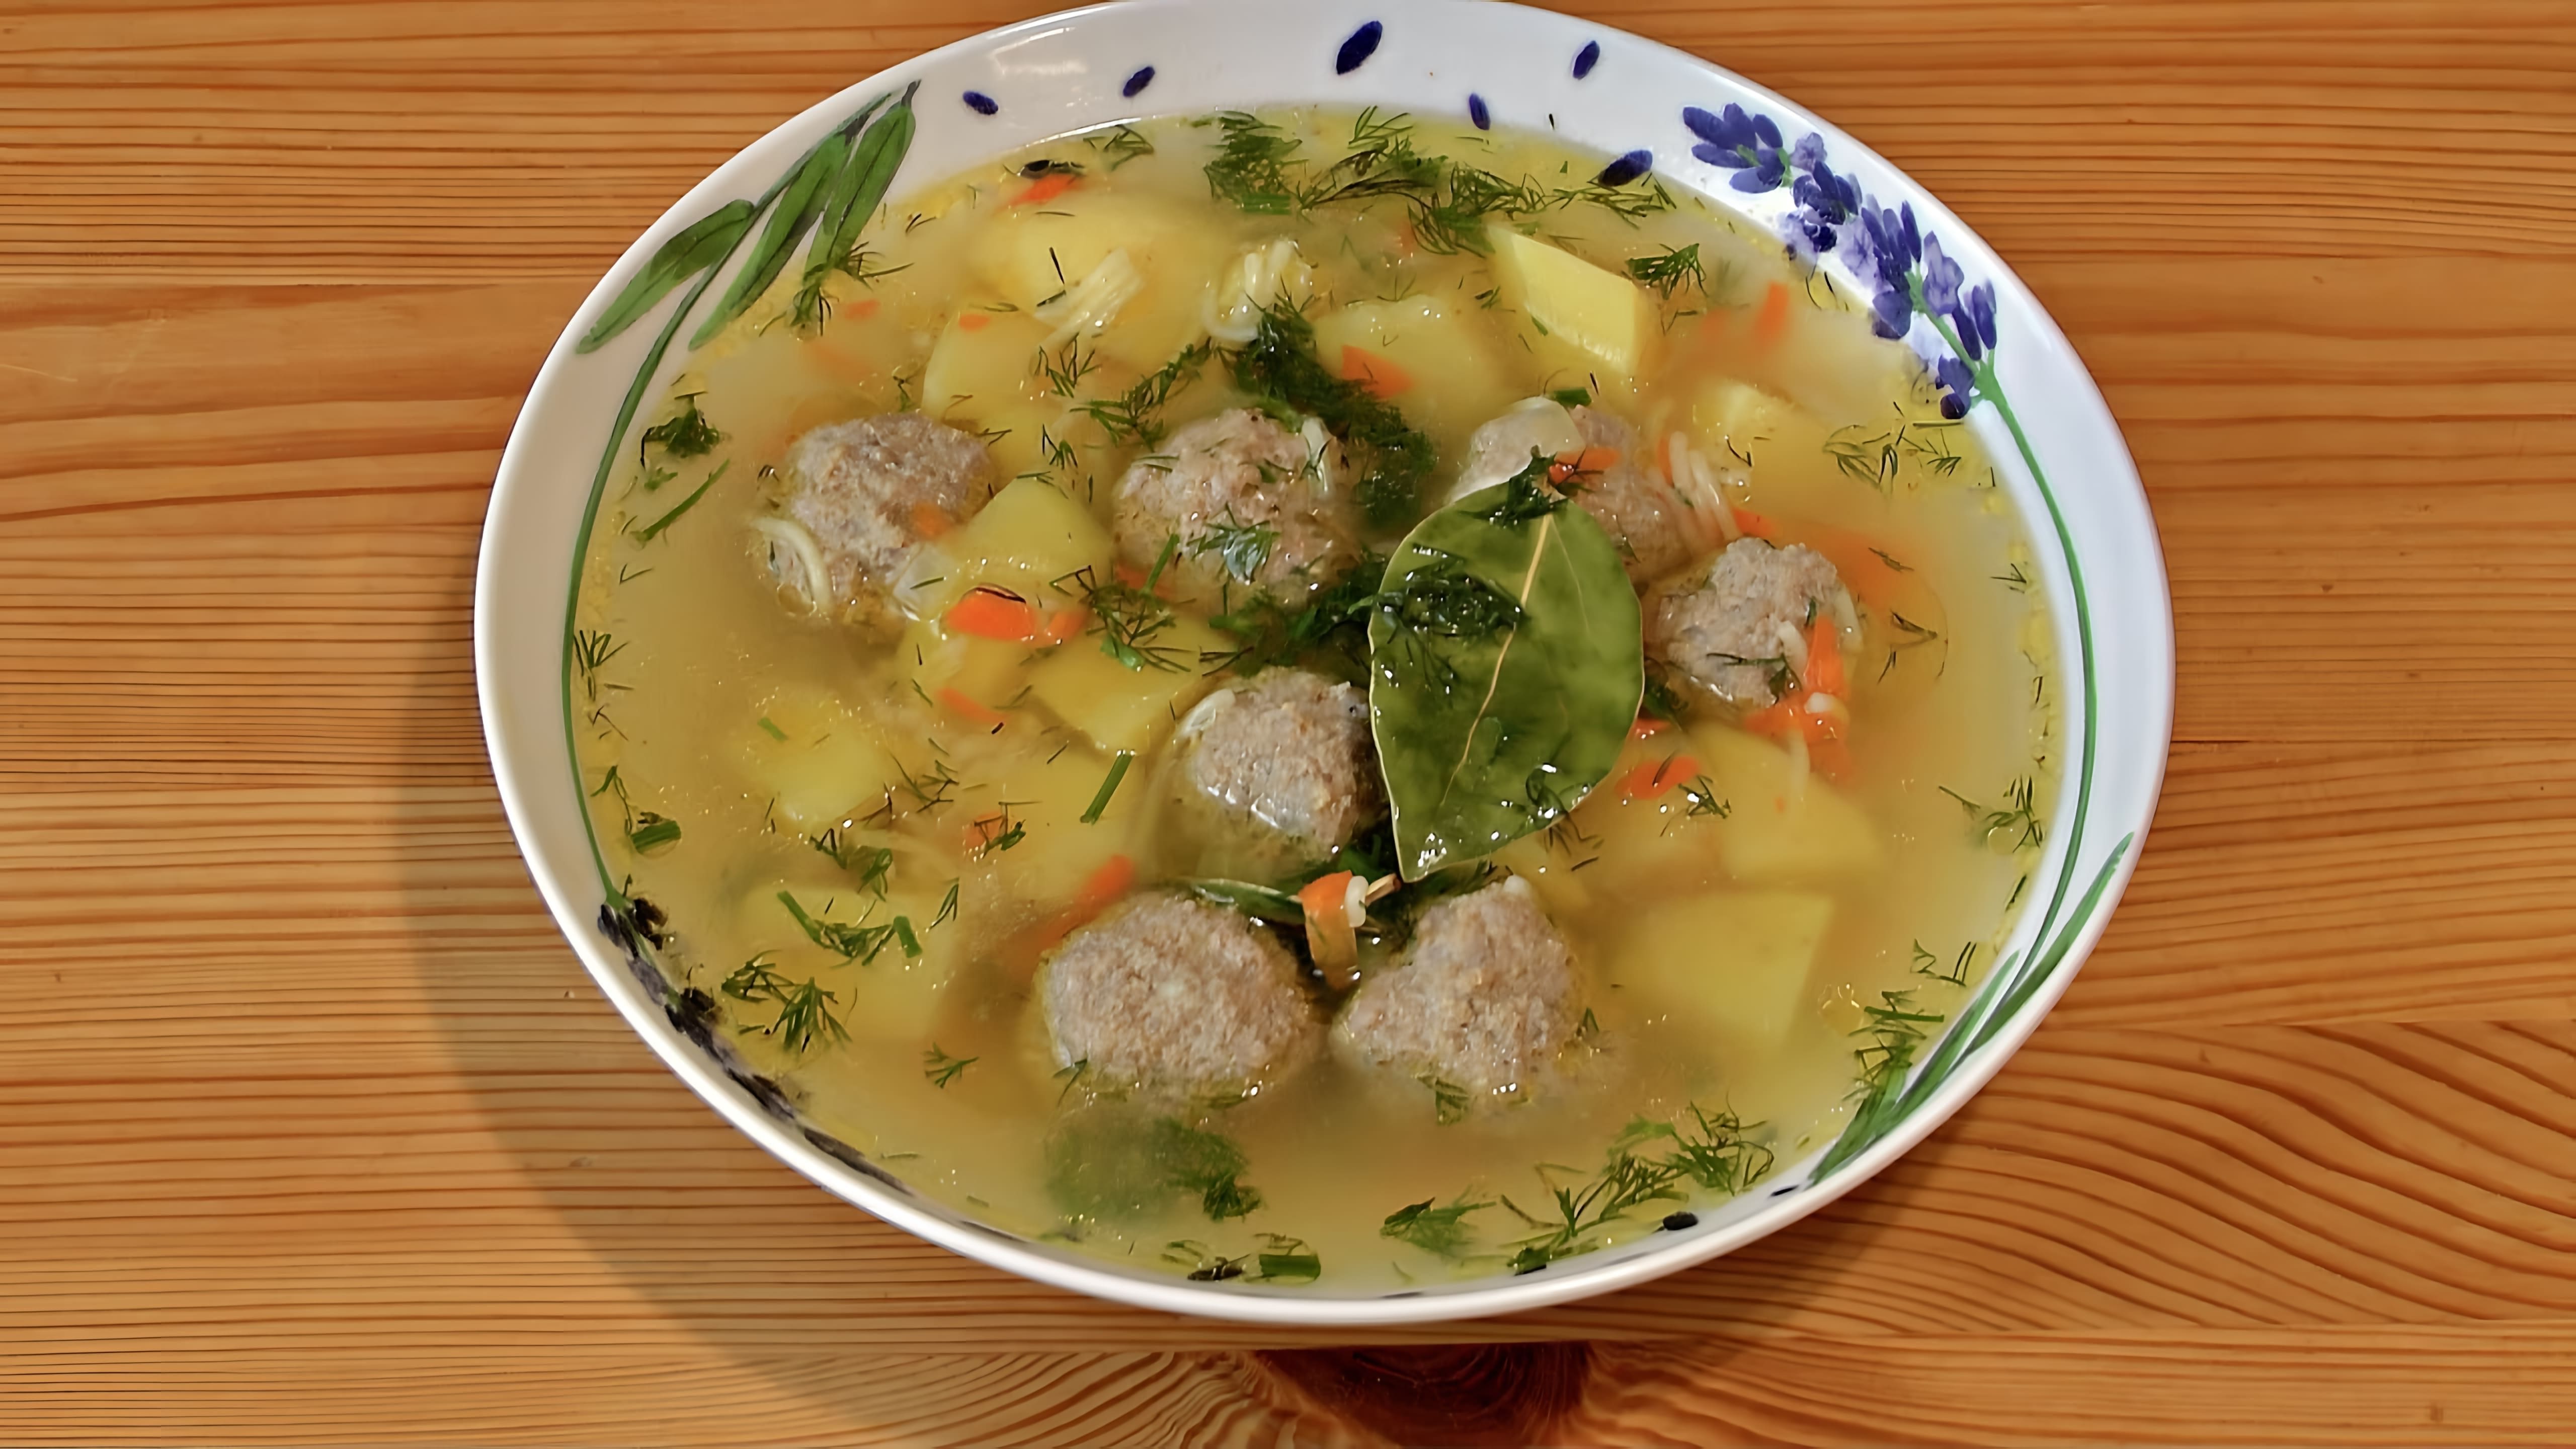 В этом видео демонстрируется рецепт приготовления вкусного супа с мясными фрикадельками и вермишелью